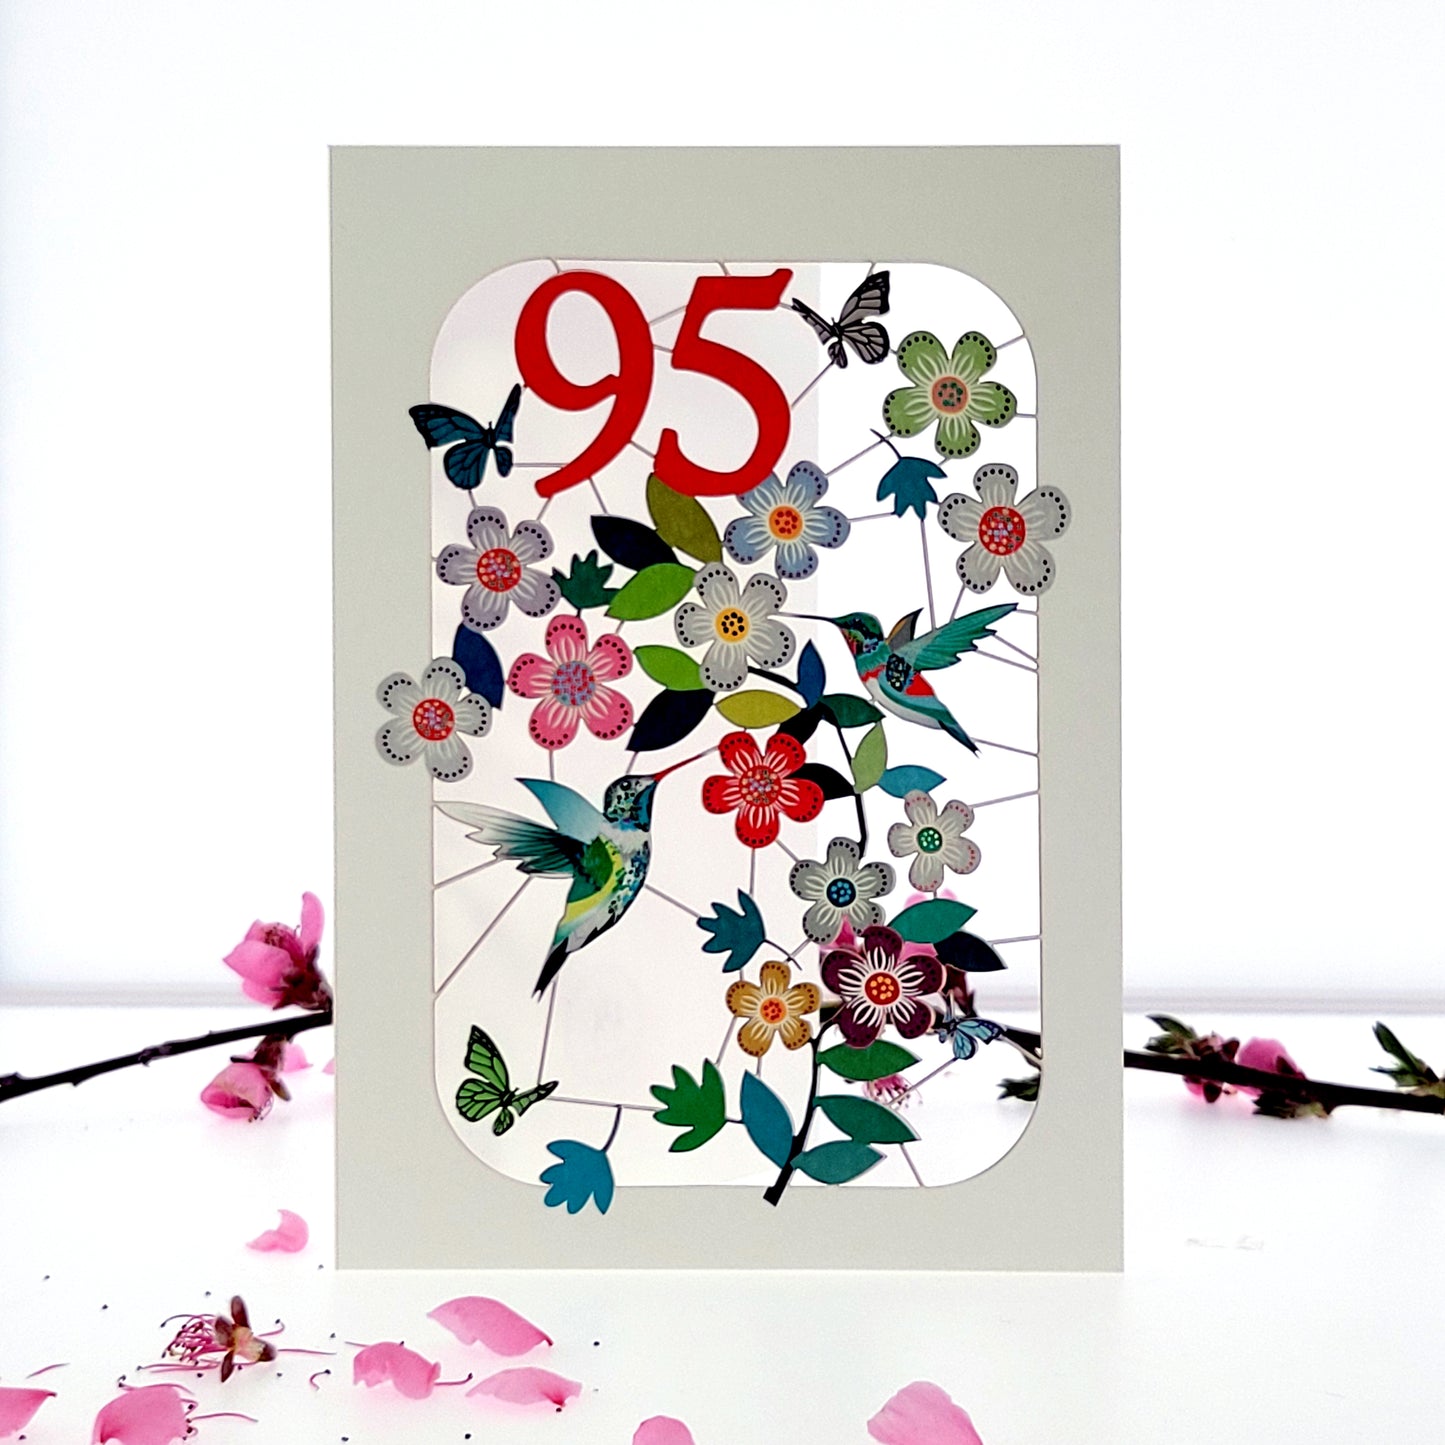 Age 95 Birthday Card, 95th Birthday Card, Humming Bird Card - GF095